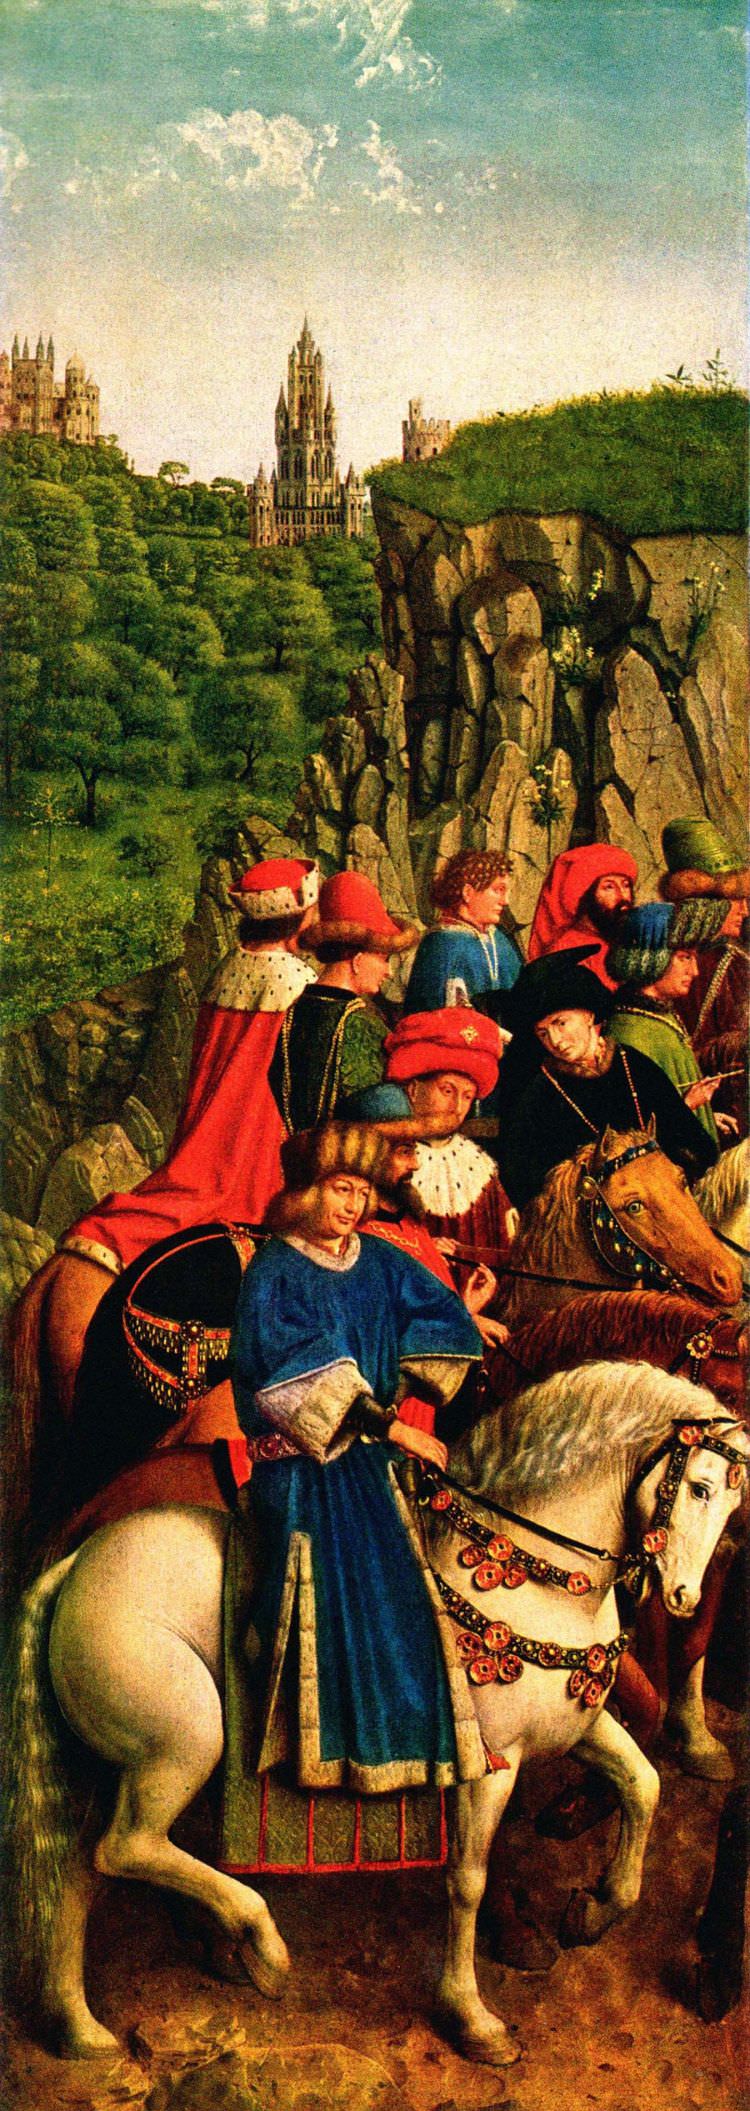 Das Ölgemälde mit dem Titel 'Die Gerechten Richter' wurde vom niederländischen Maler Jan van Eyck zwischen 1390 und 1441 in Öl gemalt. 1934 wurde es gestolen und gilt bisher als verschollen.